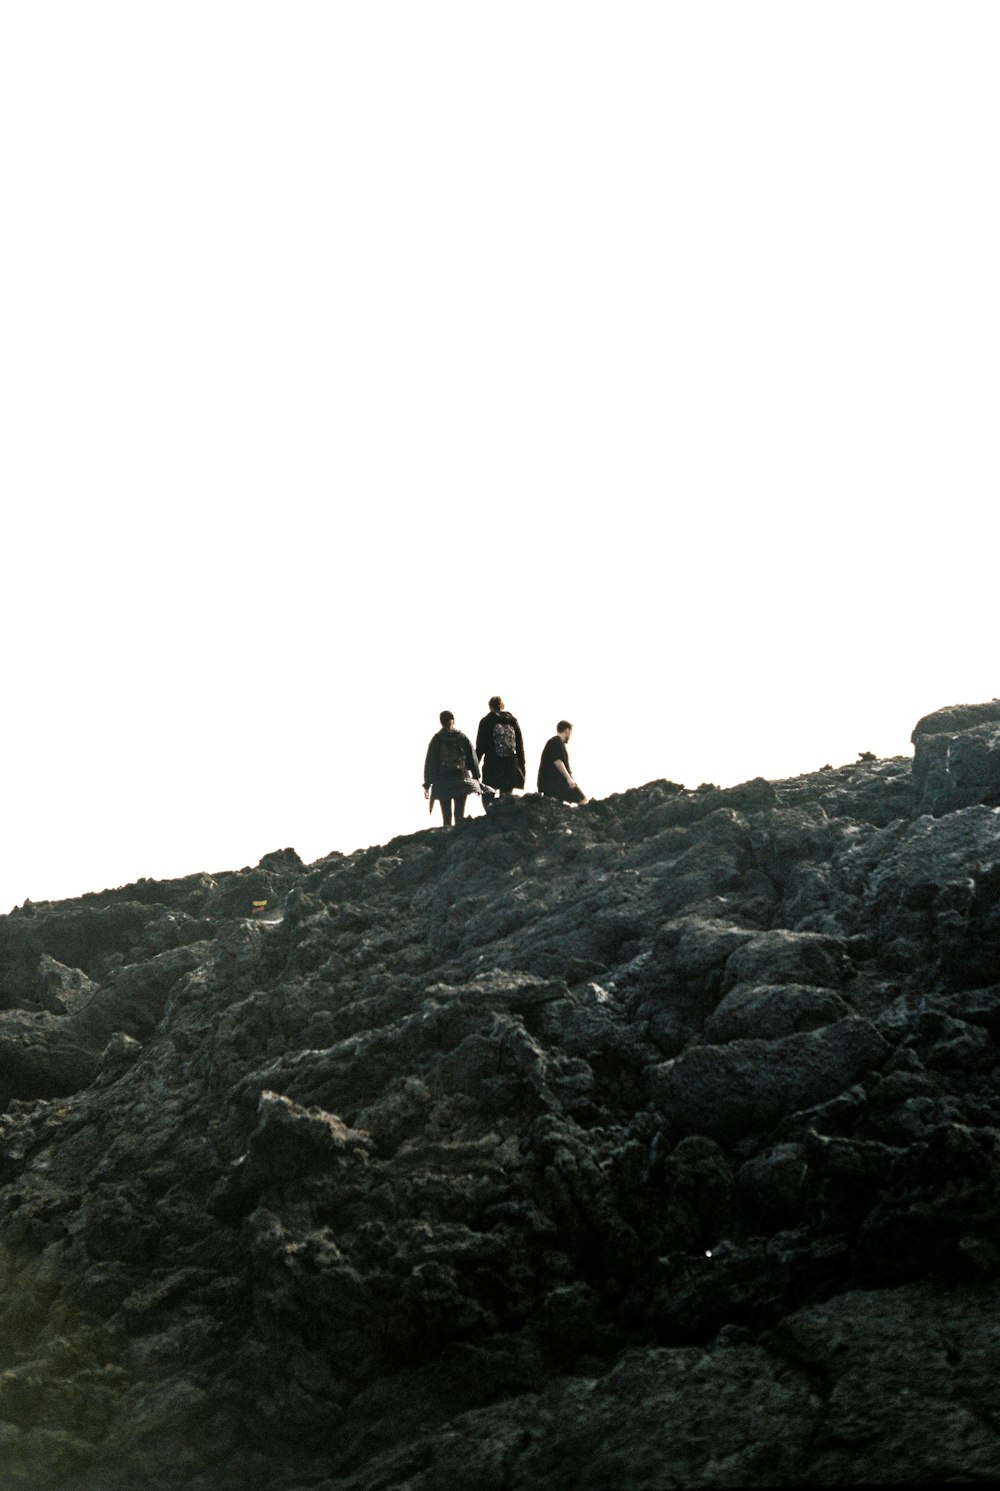 Eine Gruppe von Menschen sitzt auf einem felsigen Hügel